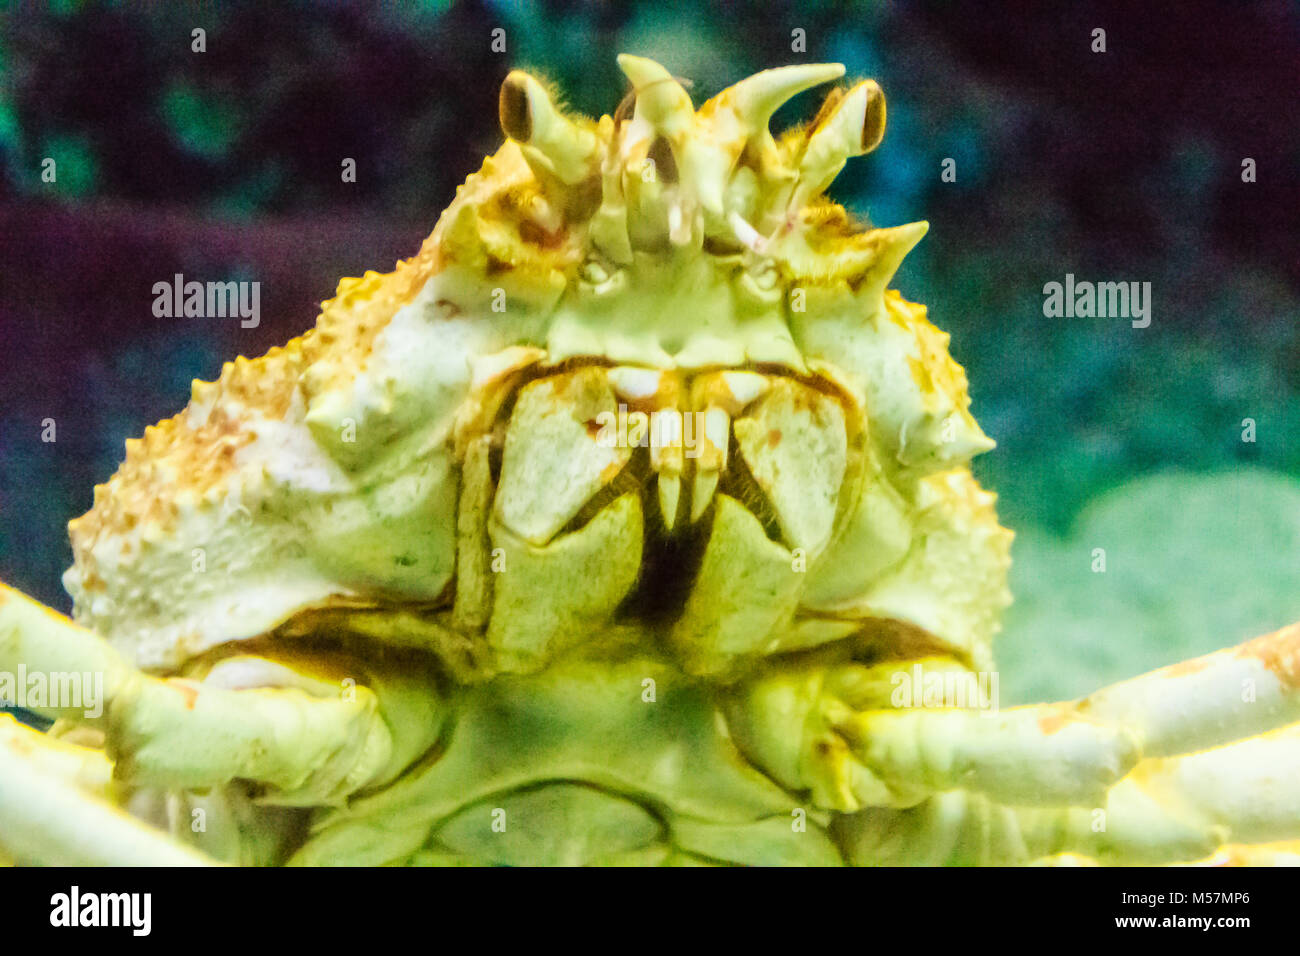 Close-up Taraba sea crabs or alaska king crab in aquarium at Pattaya city, Thailand Stock Photo